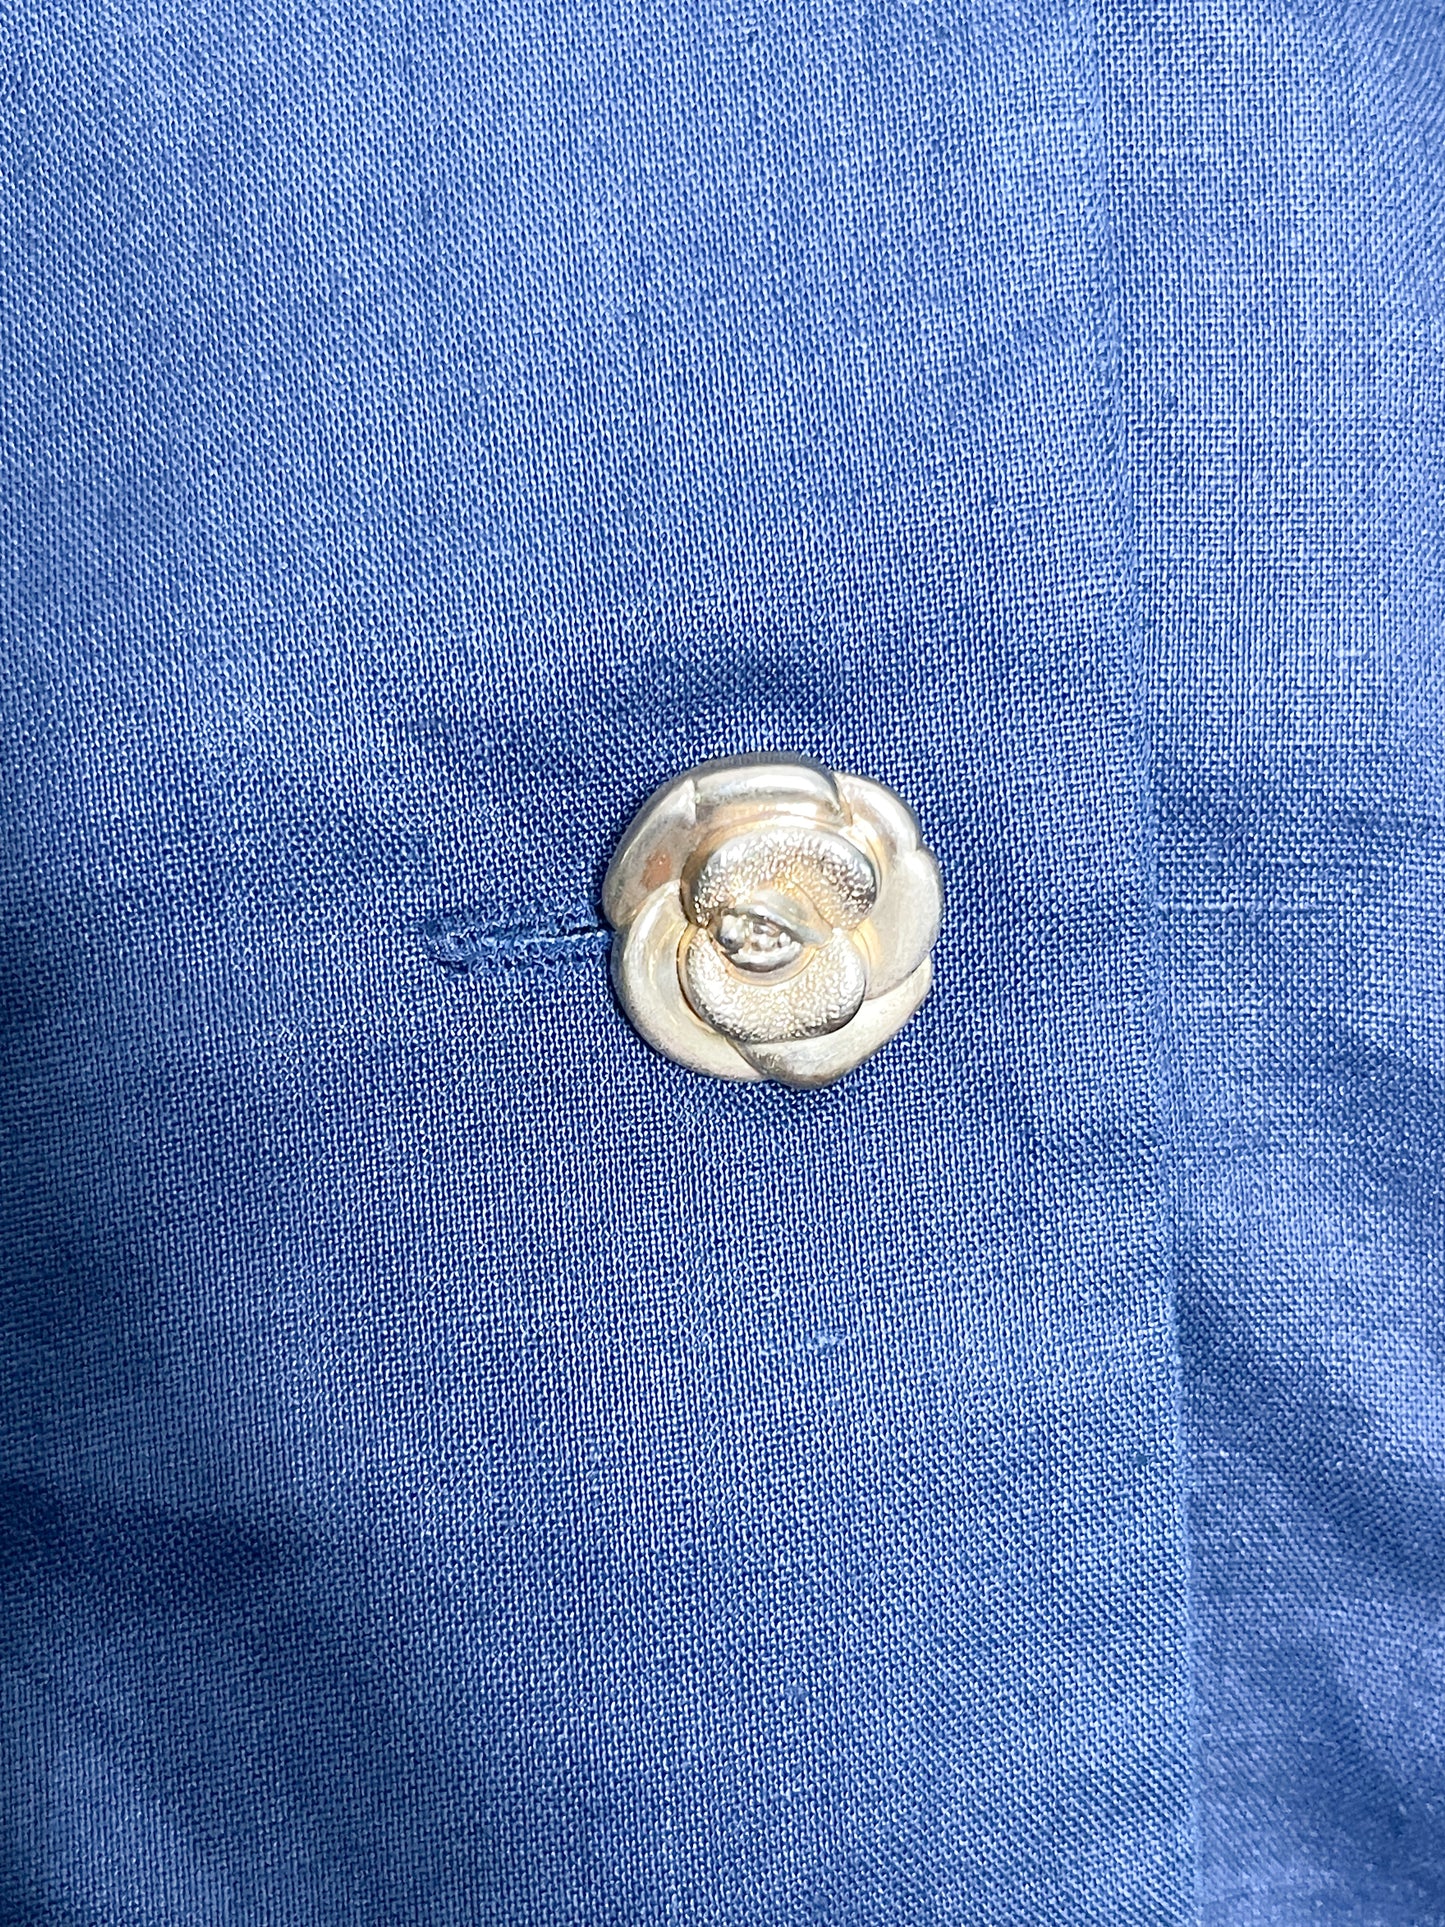 Vintage Novan Button Front Blouse | Collectible Novan Blouse |